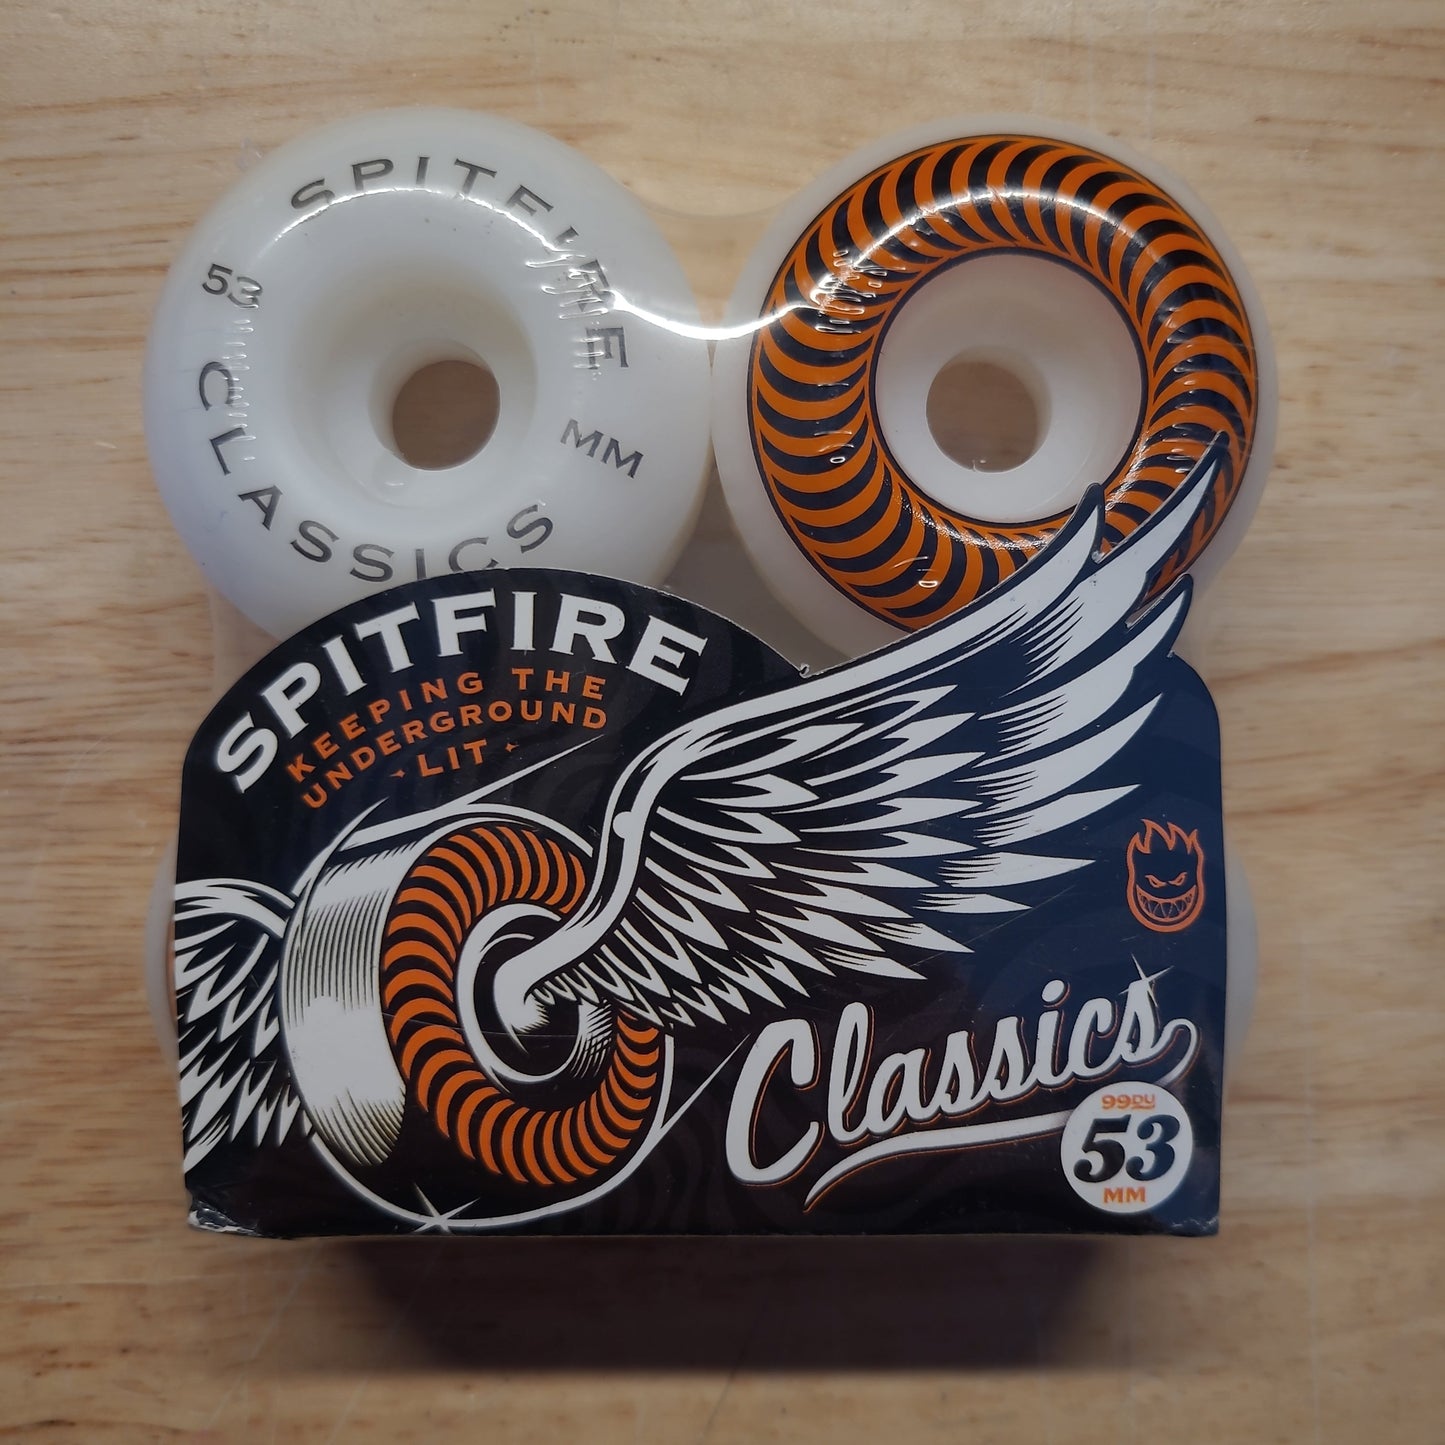 Spitfire Wheels - 53mm 99A Classics